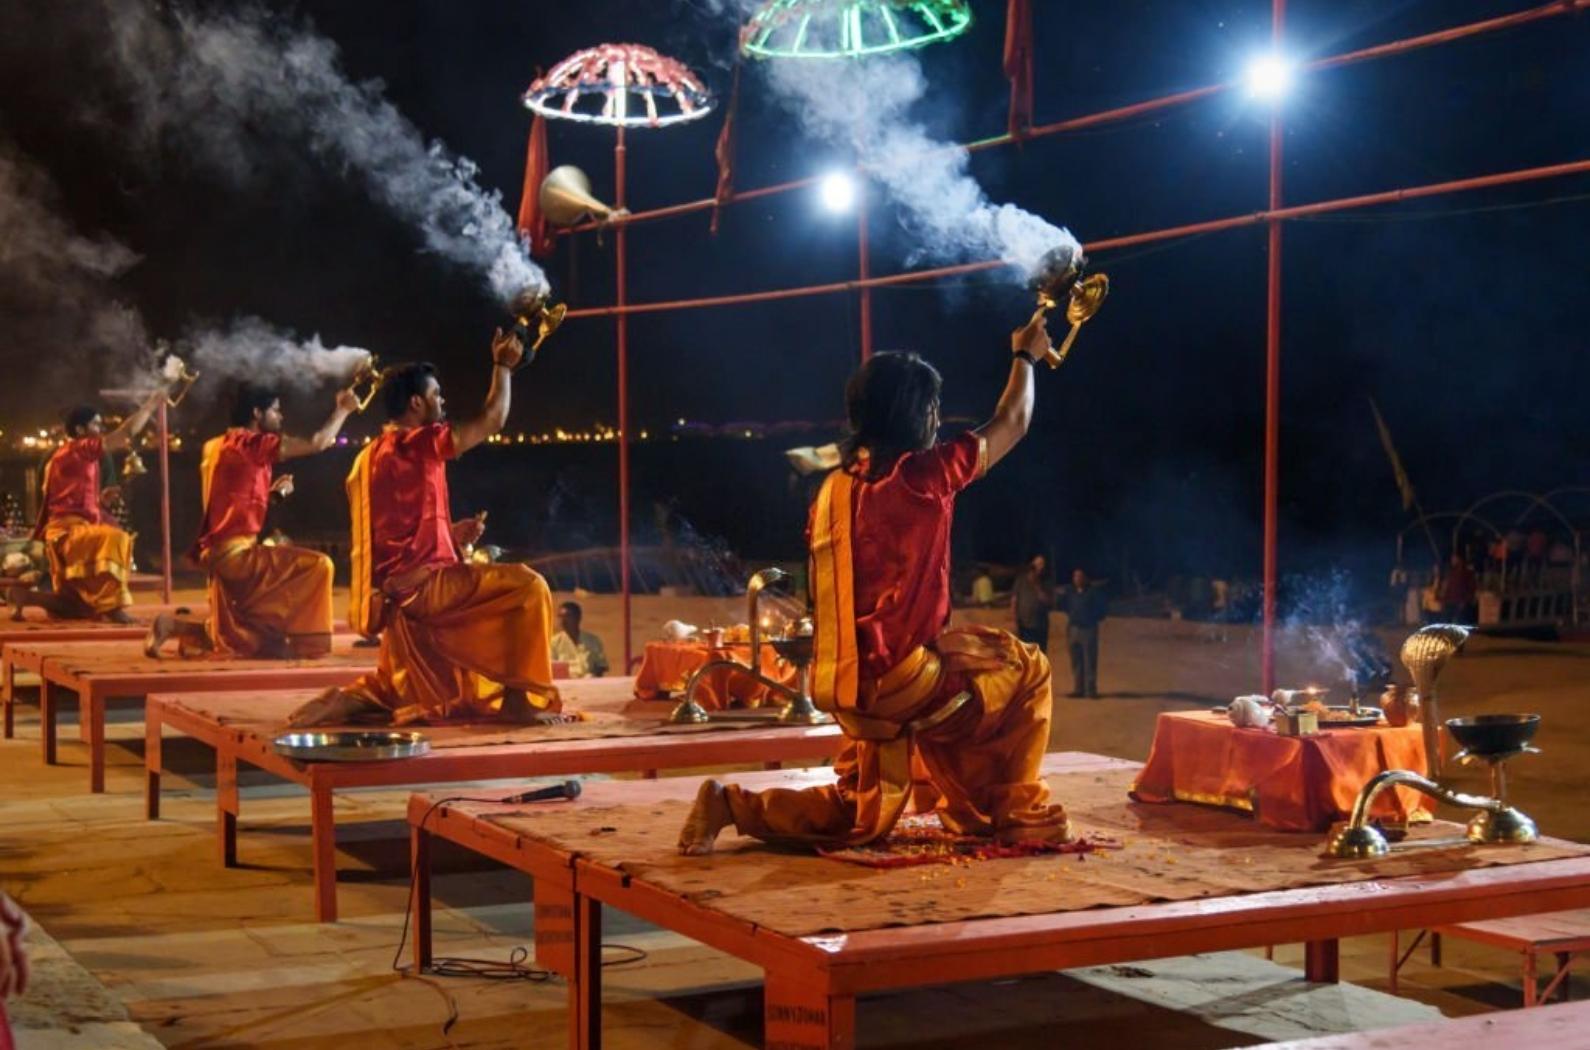 Ganga aarti ceremony rituals at Assi Ghat in Varanasi.